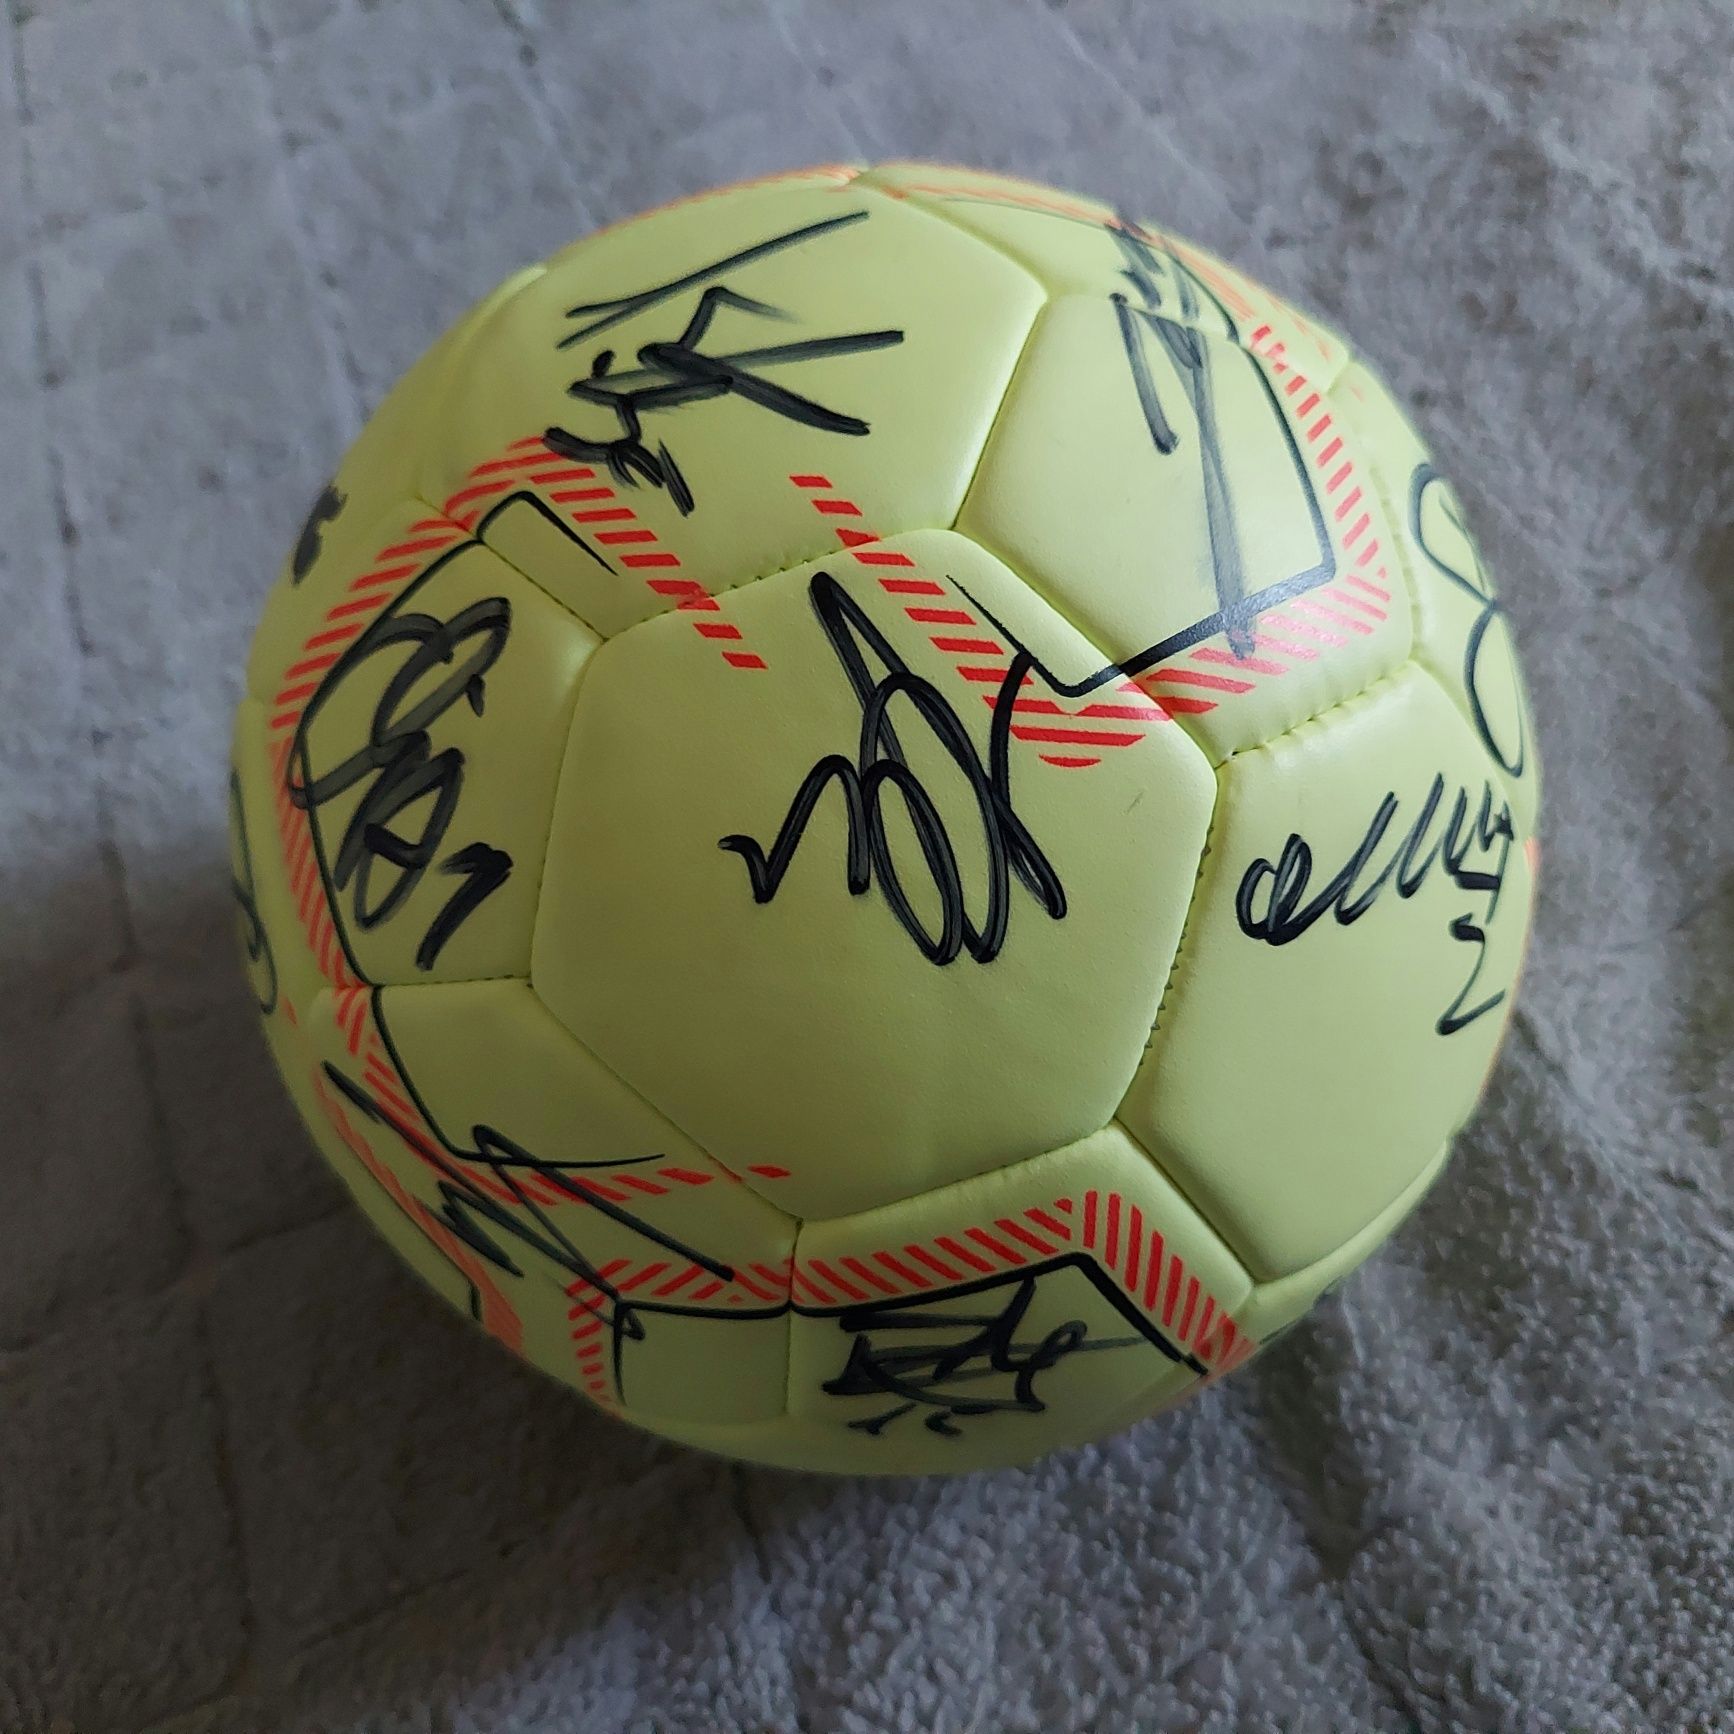 Гандбольный мяч подписанный игроками "Rhein-Neckar Löwen"